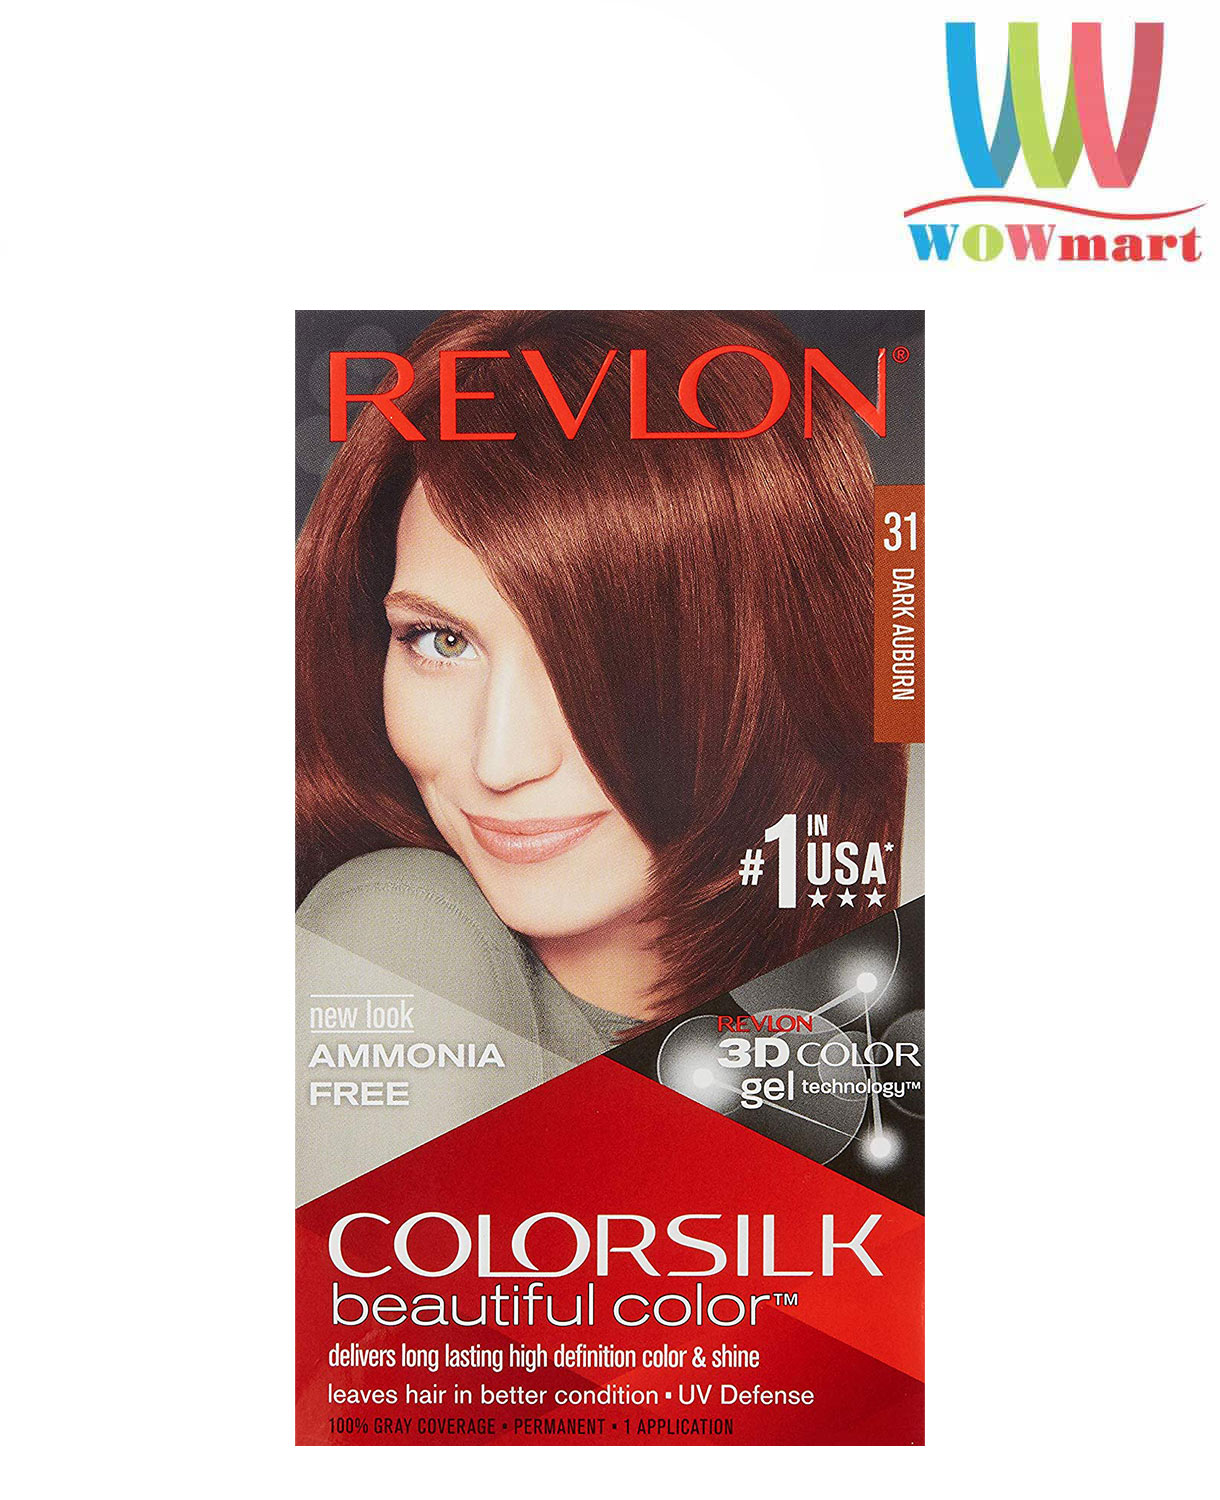 Với Revlon Colorsilk Dark Auburn, bạn đang sở hữu vẻ đẹp quyến rũ, nuột nà và đầy mê hoặc. Những đường nét tinh tế và sắc đỏ rực vào bóng tối sẽ khiến bạn tỏa sáng hơn bao giờ hết.